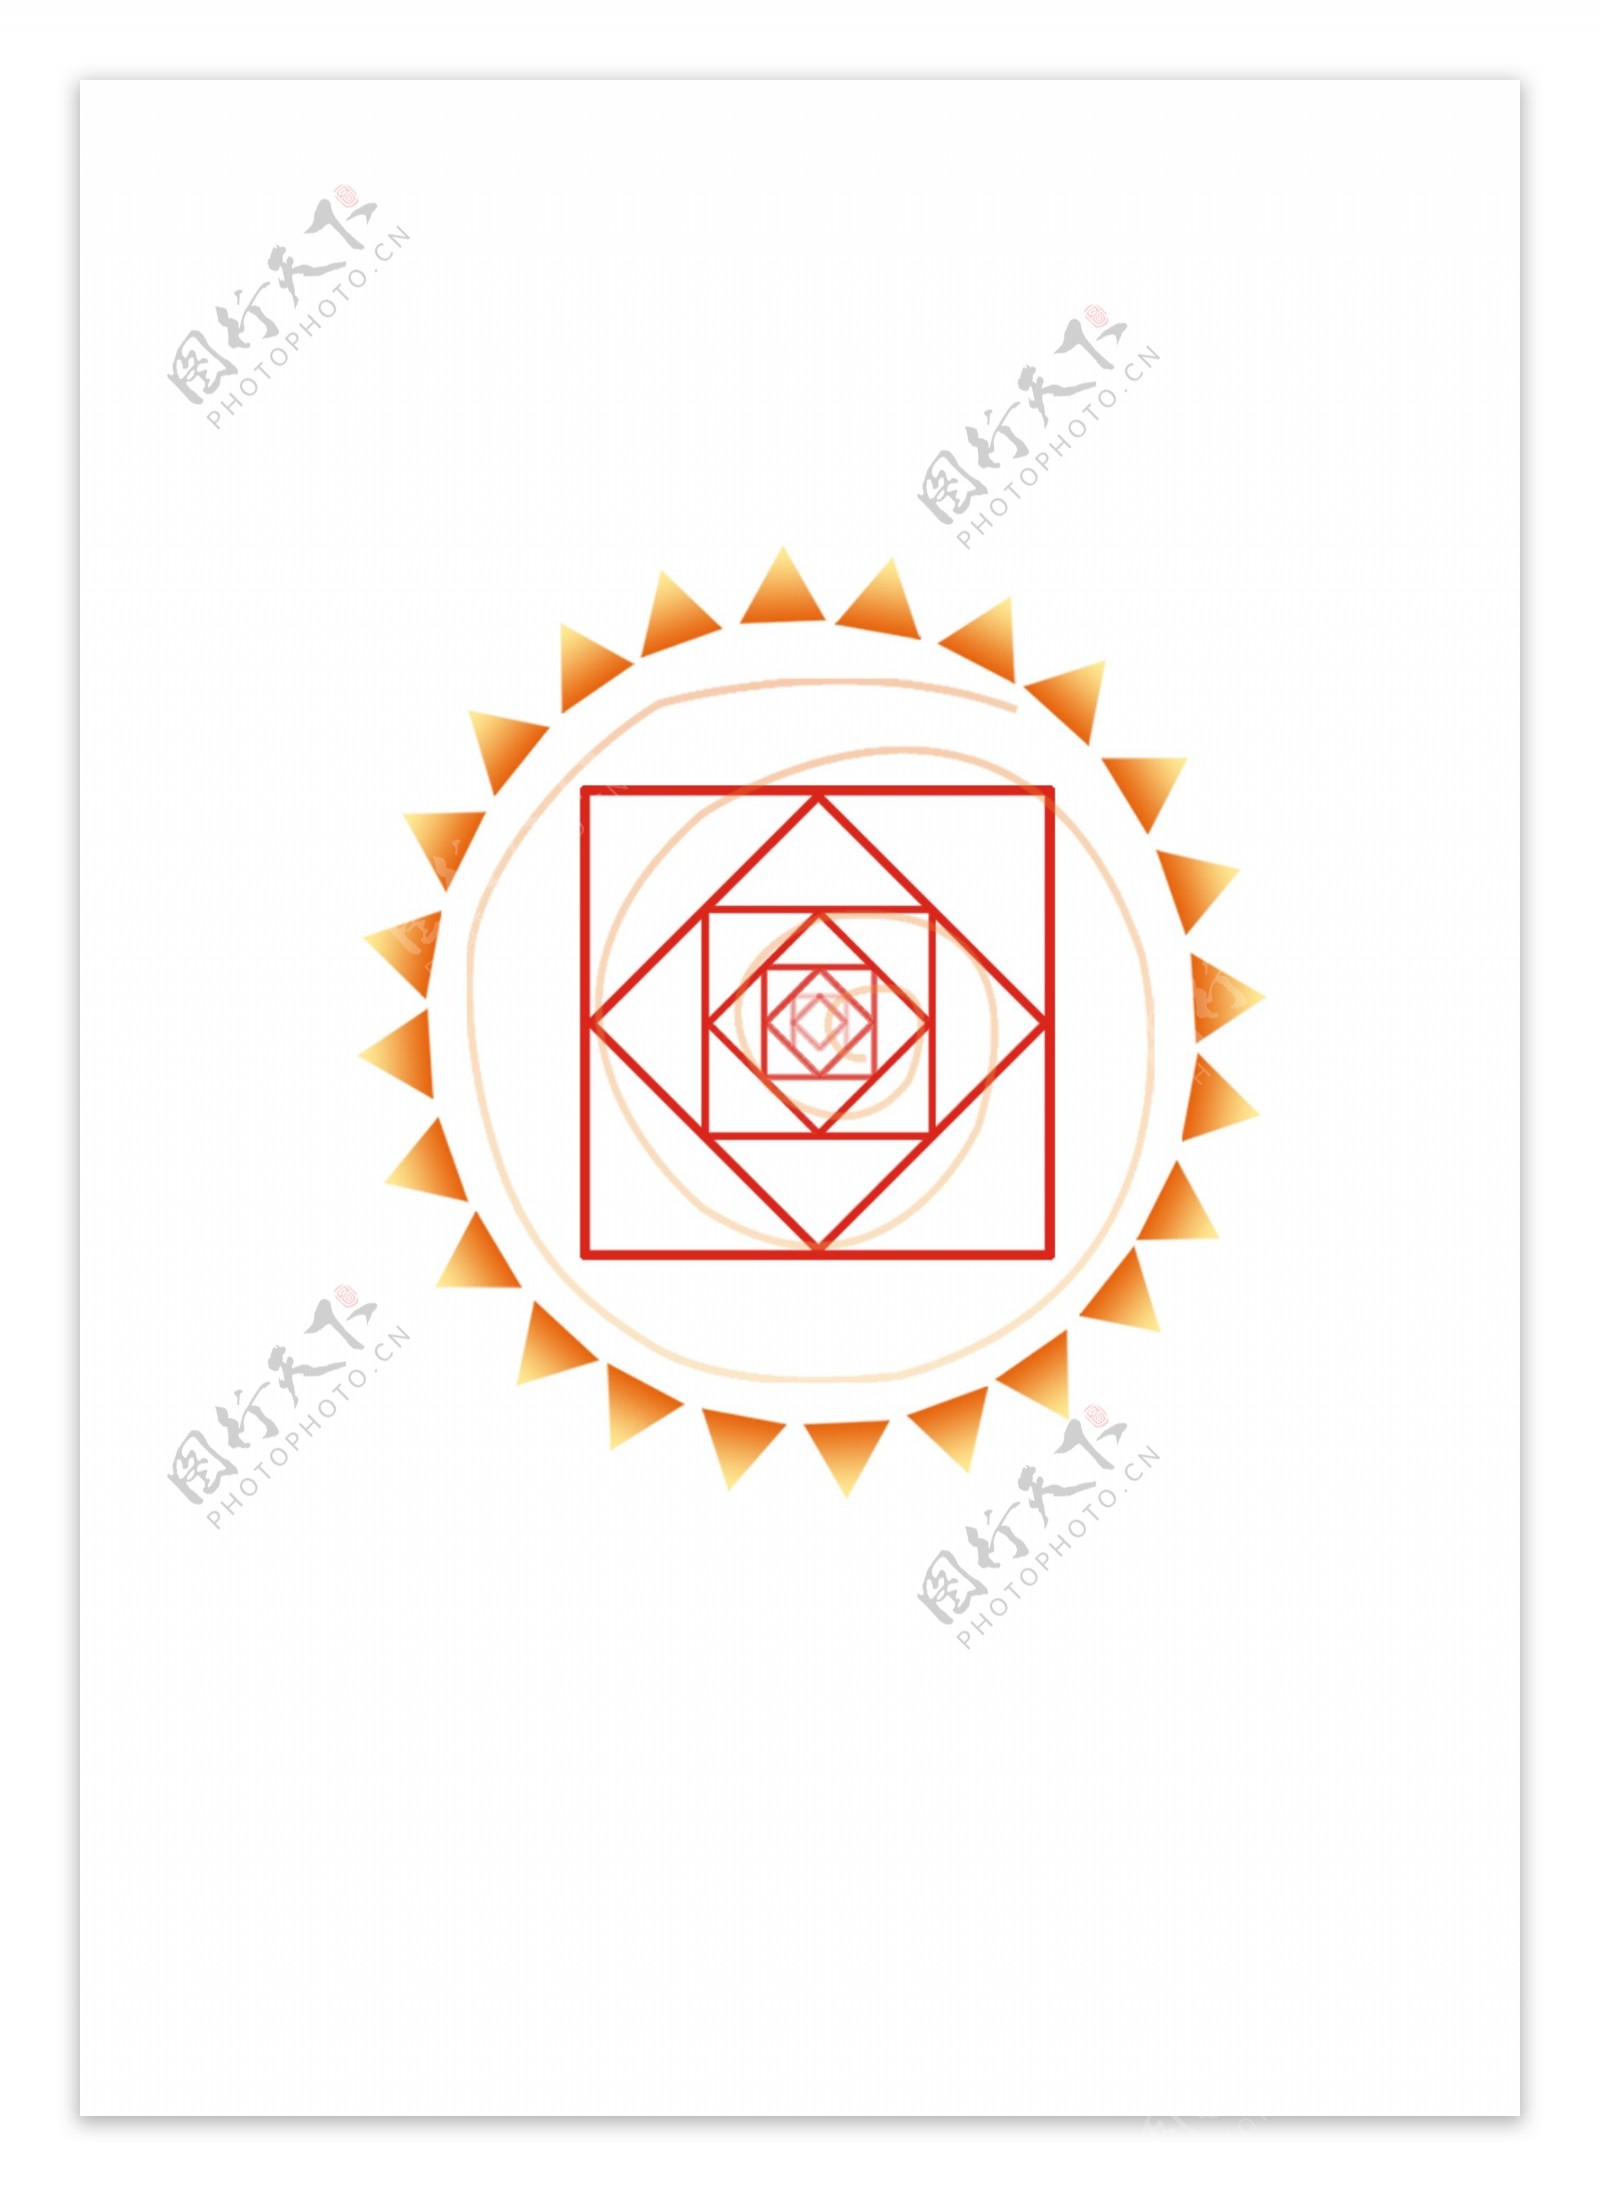 太阳花logo图片